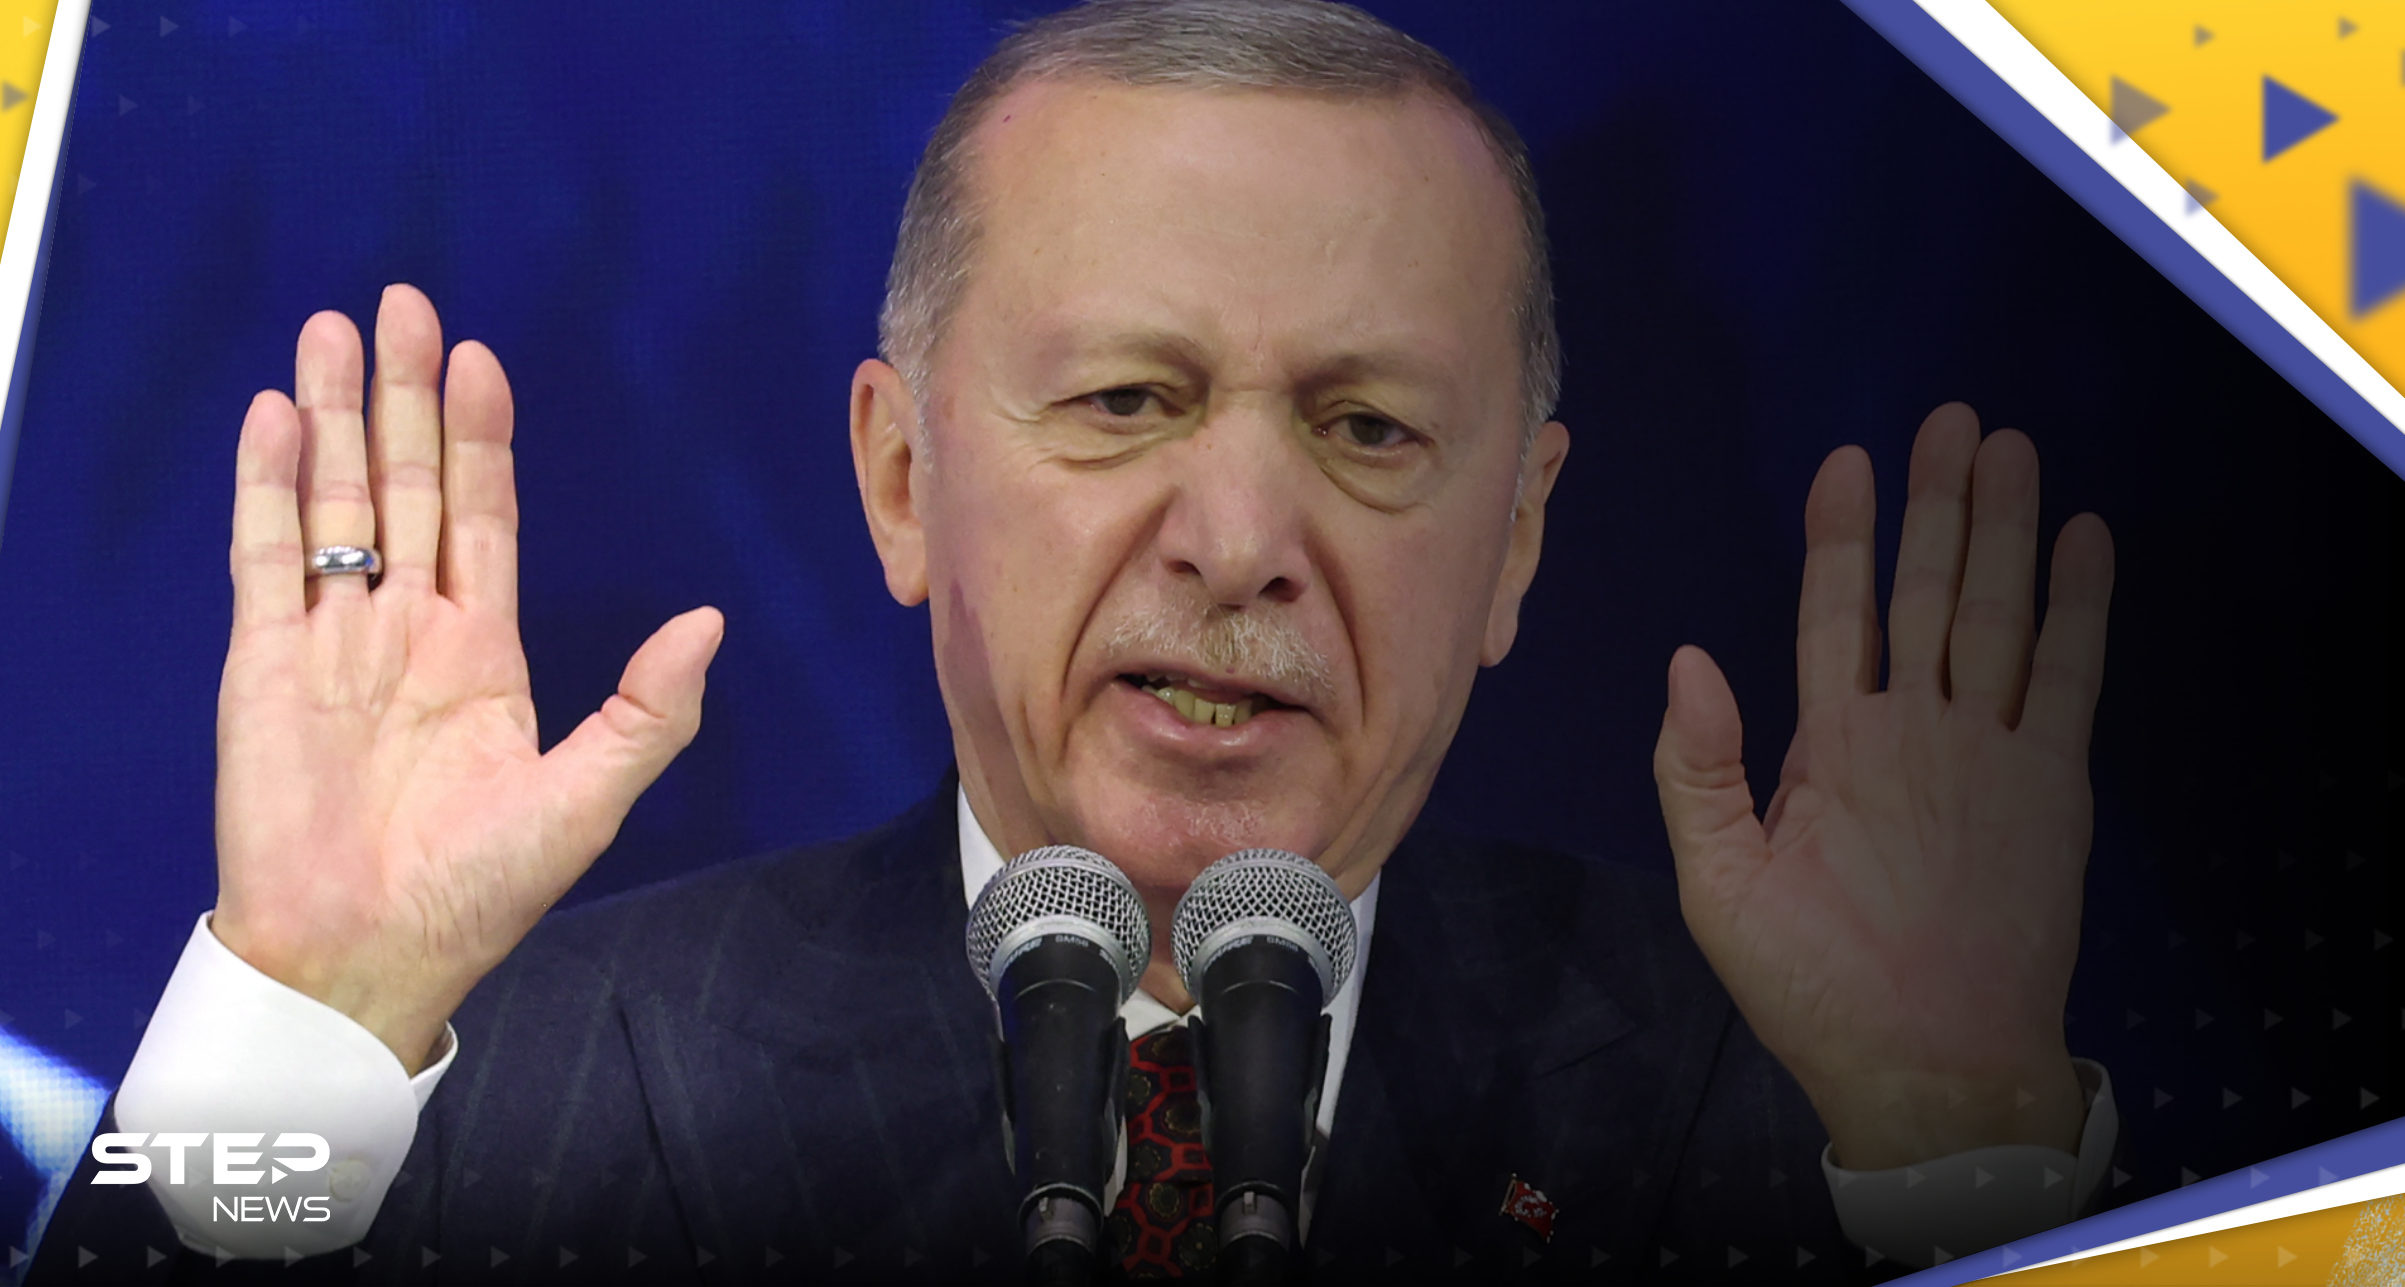 أردوغان يطالب إسرائيل بوقف "هذا الجنون" على الفور 